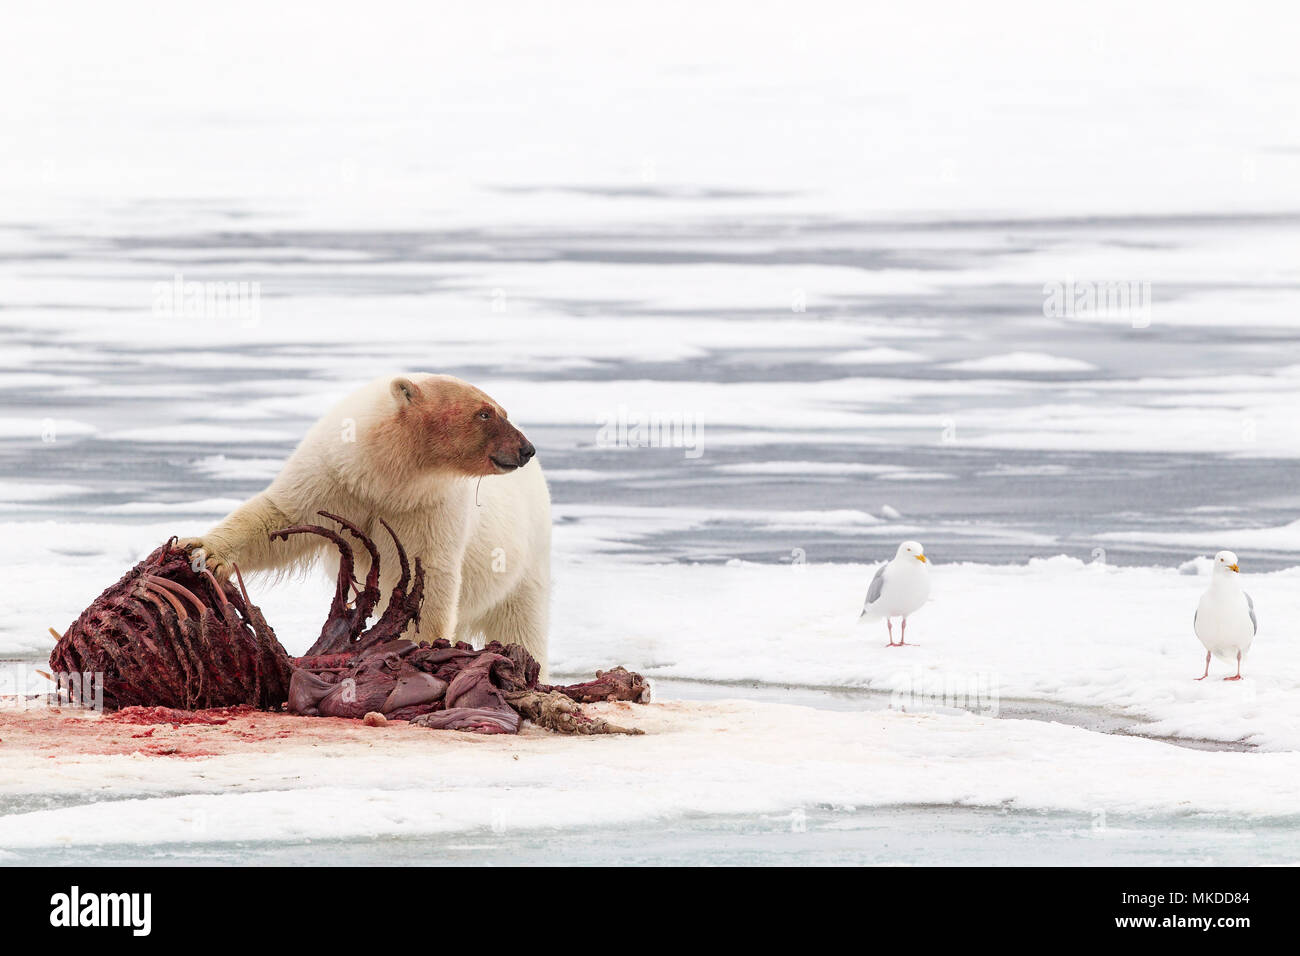 El oso polar (Ursus maritimus) comiendo una morsa (Odobenus rosmarus), sobre el hielo, Spitsbergen, Svalbard, archipiélago noruego, Noruega, el Océano Ártico Foto de stock